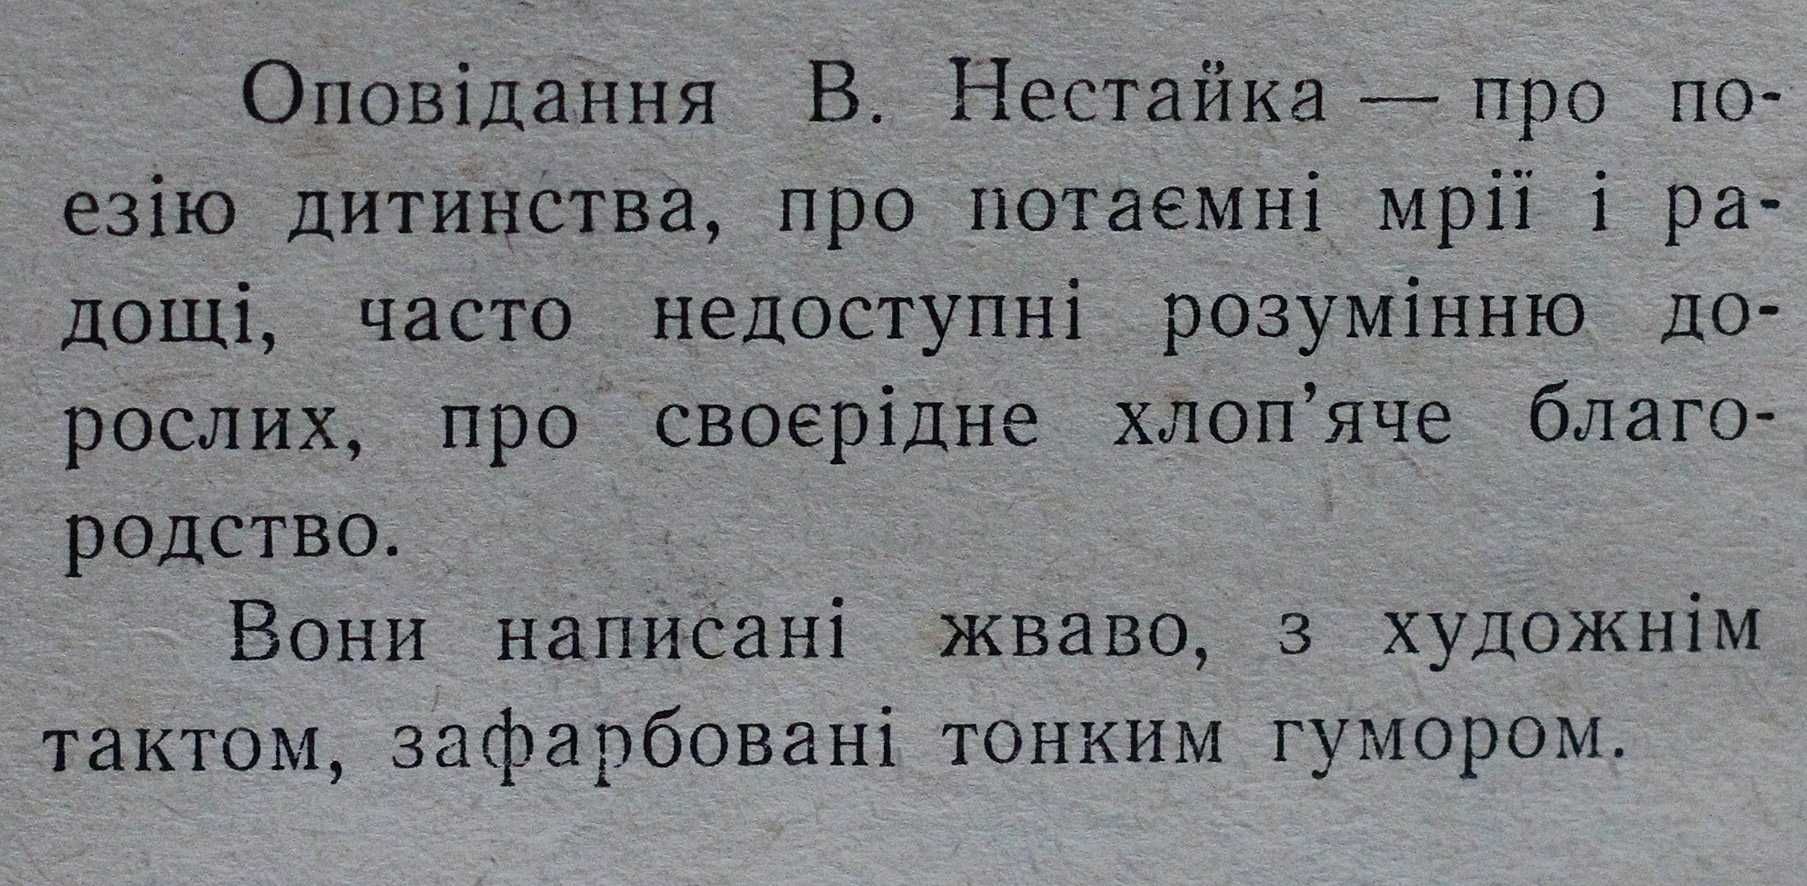 Книга Всеволод Нестайко Космо-Натка